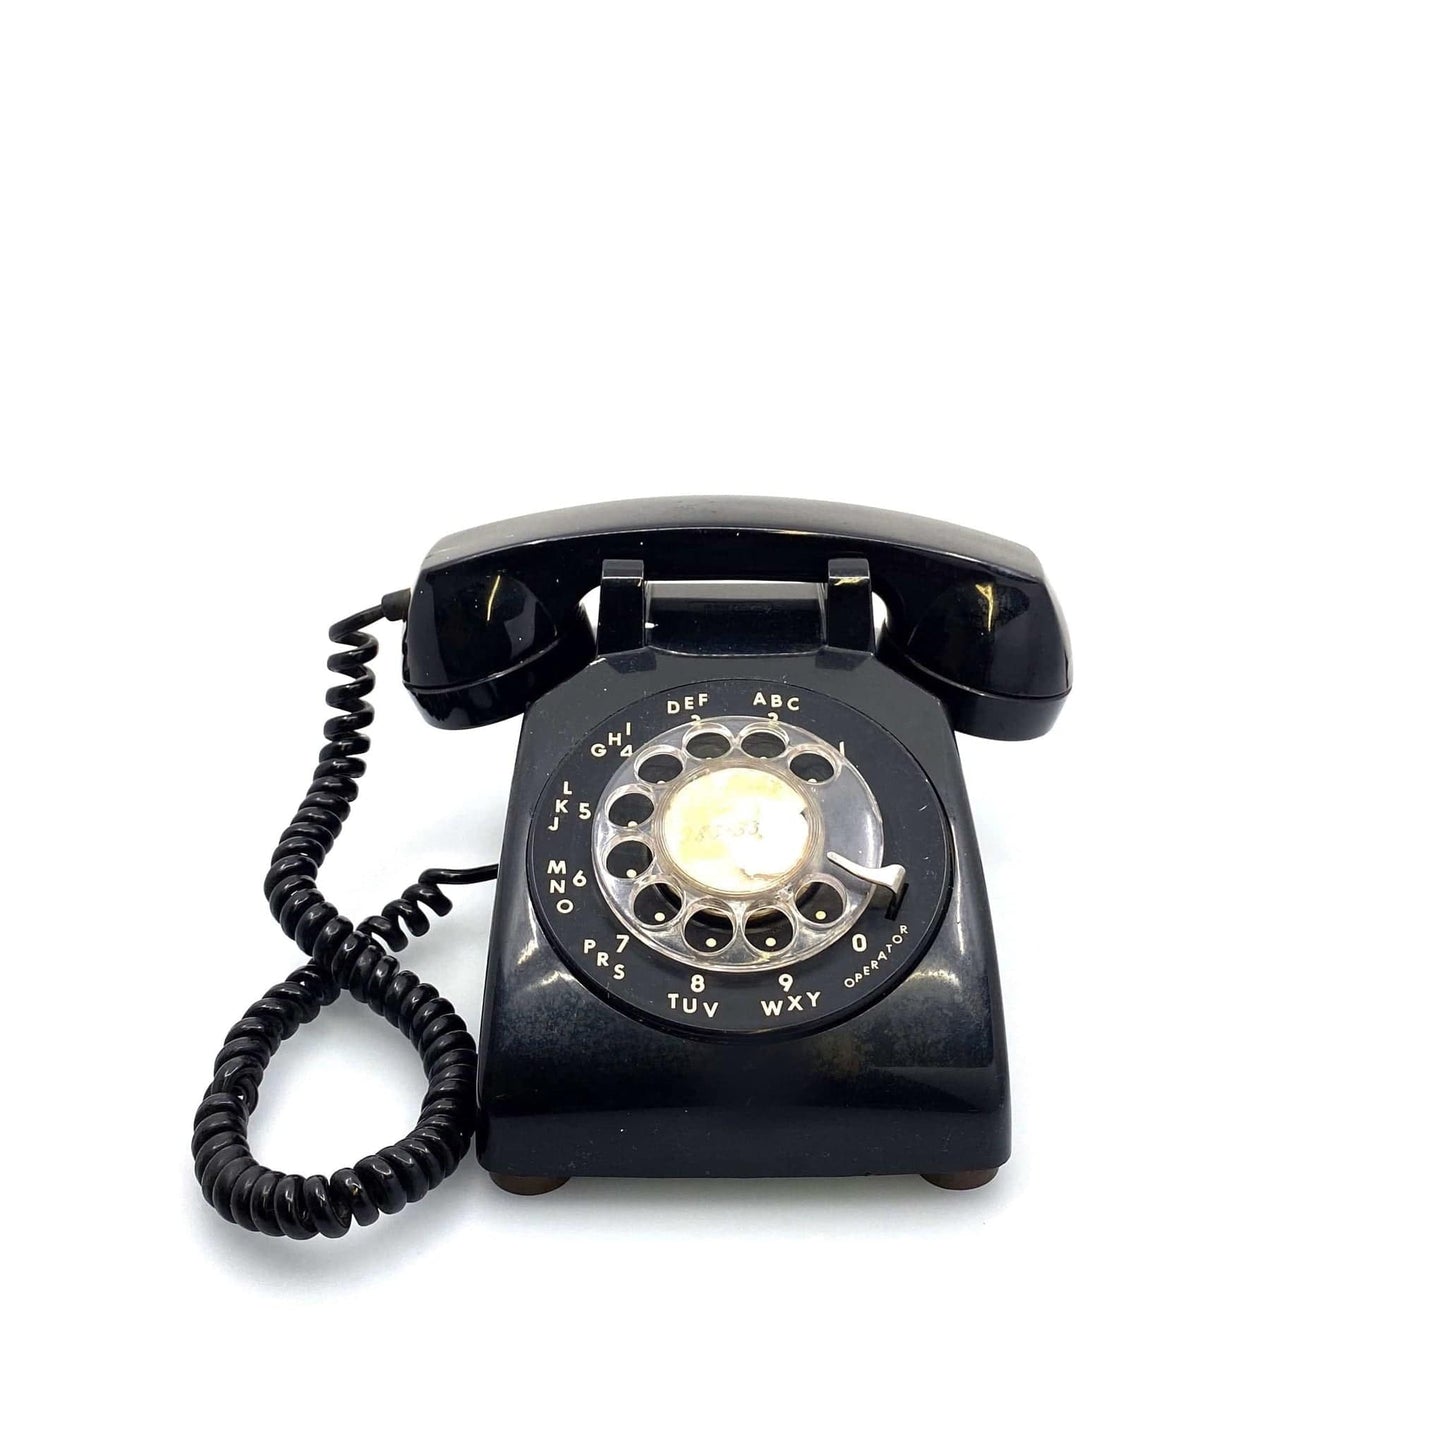 Vintage ITT Desktop Rotary Phone Black 500 Telphone Corded 1972 *FPO